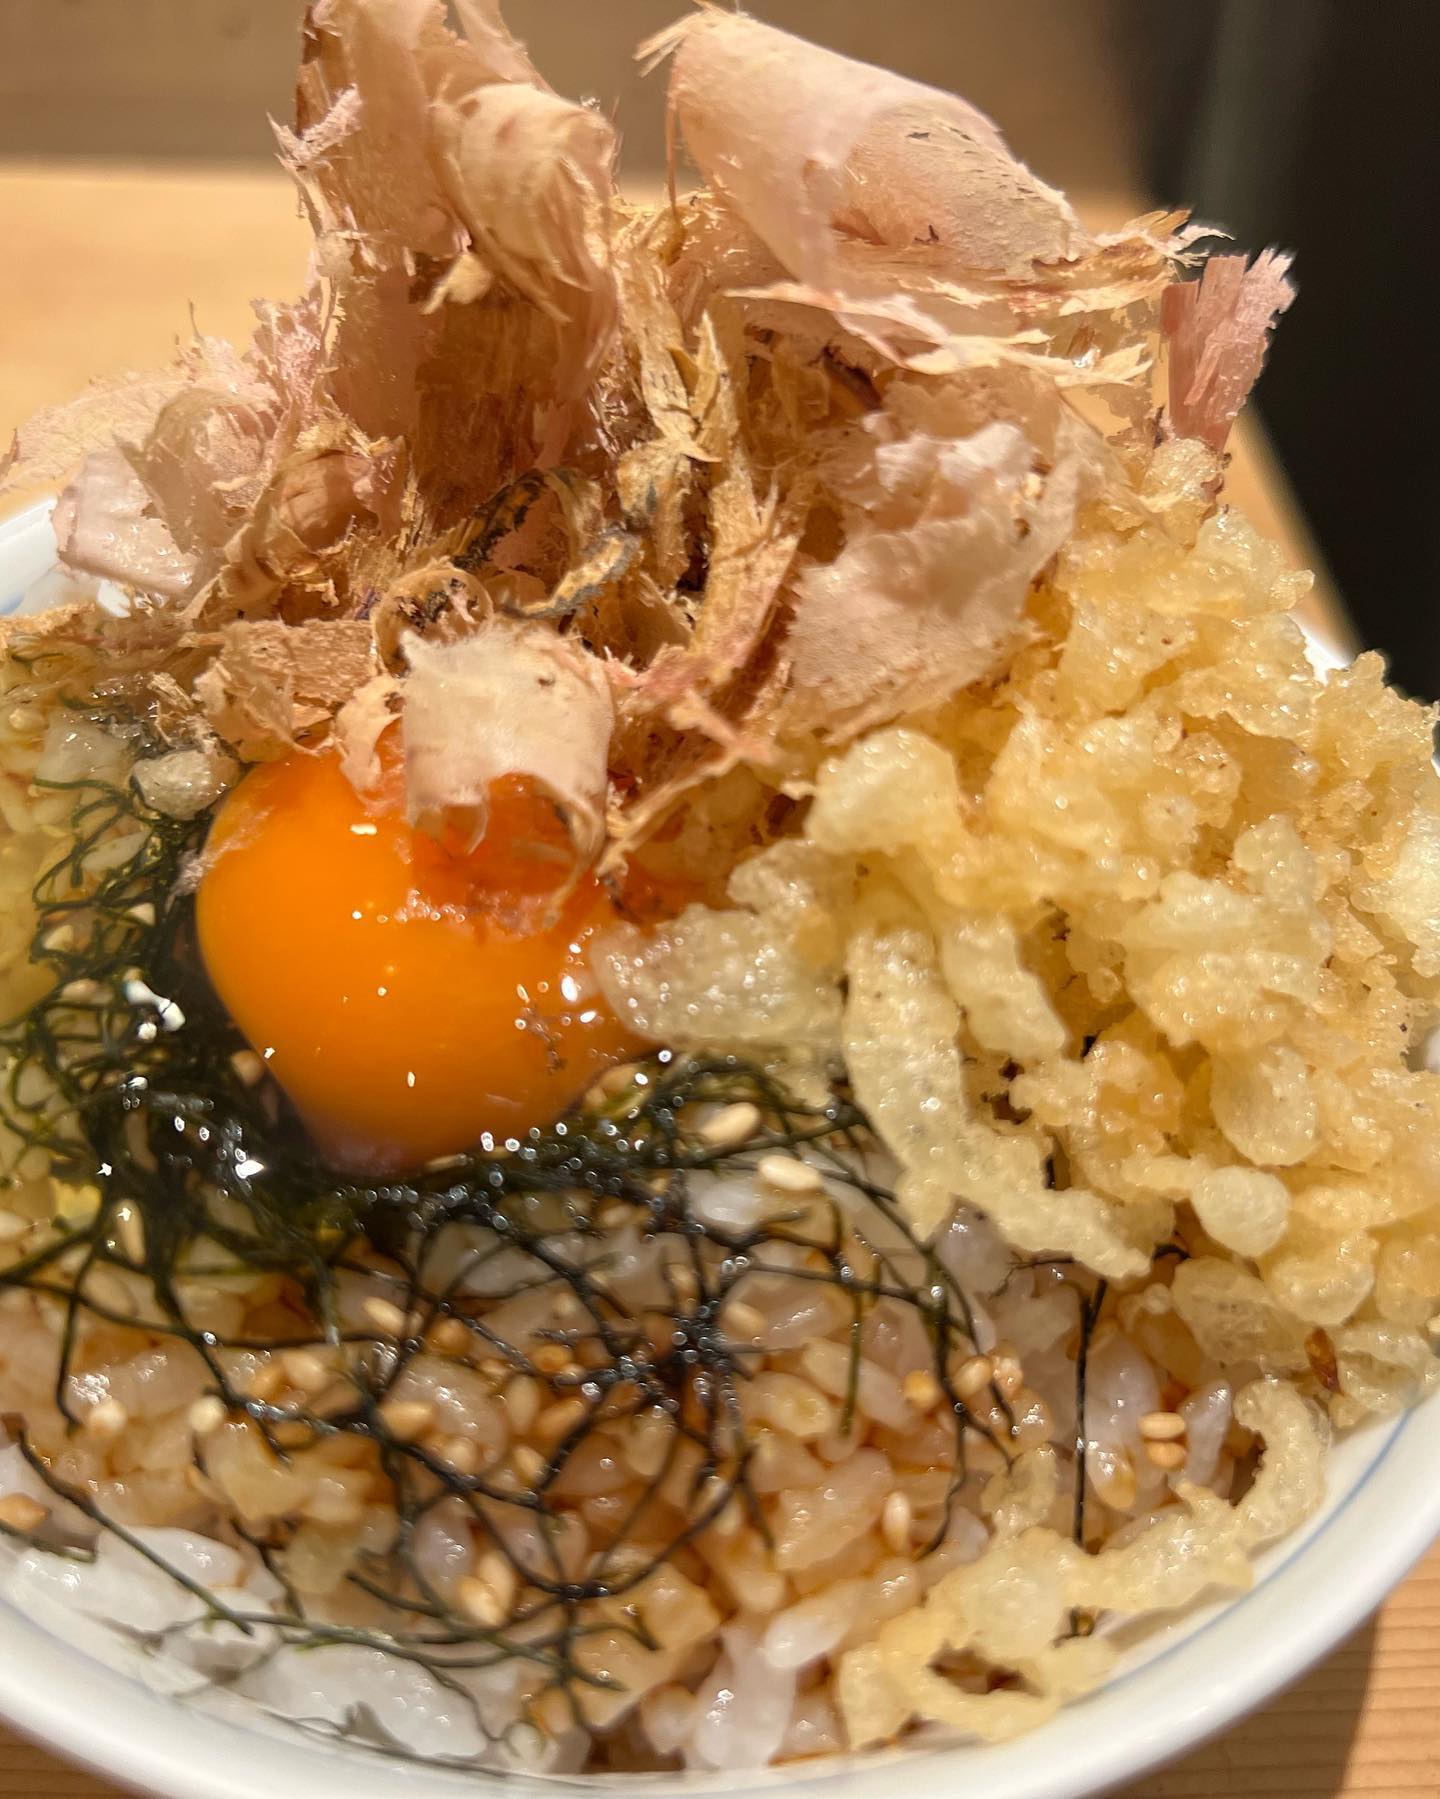 天ぷら屋のTKG

削りたてのカツオ節で食べると

ものすごく美味しいですよ♪